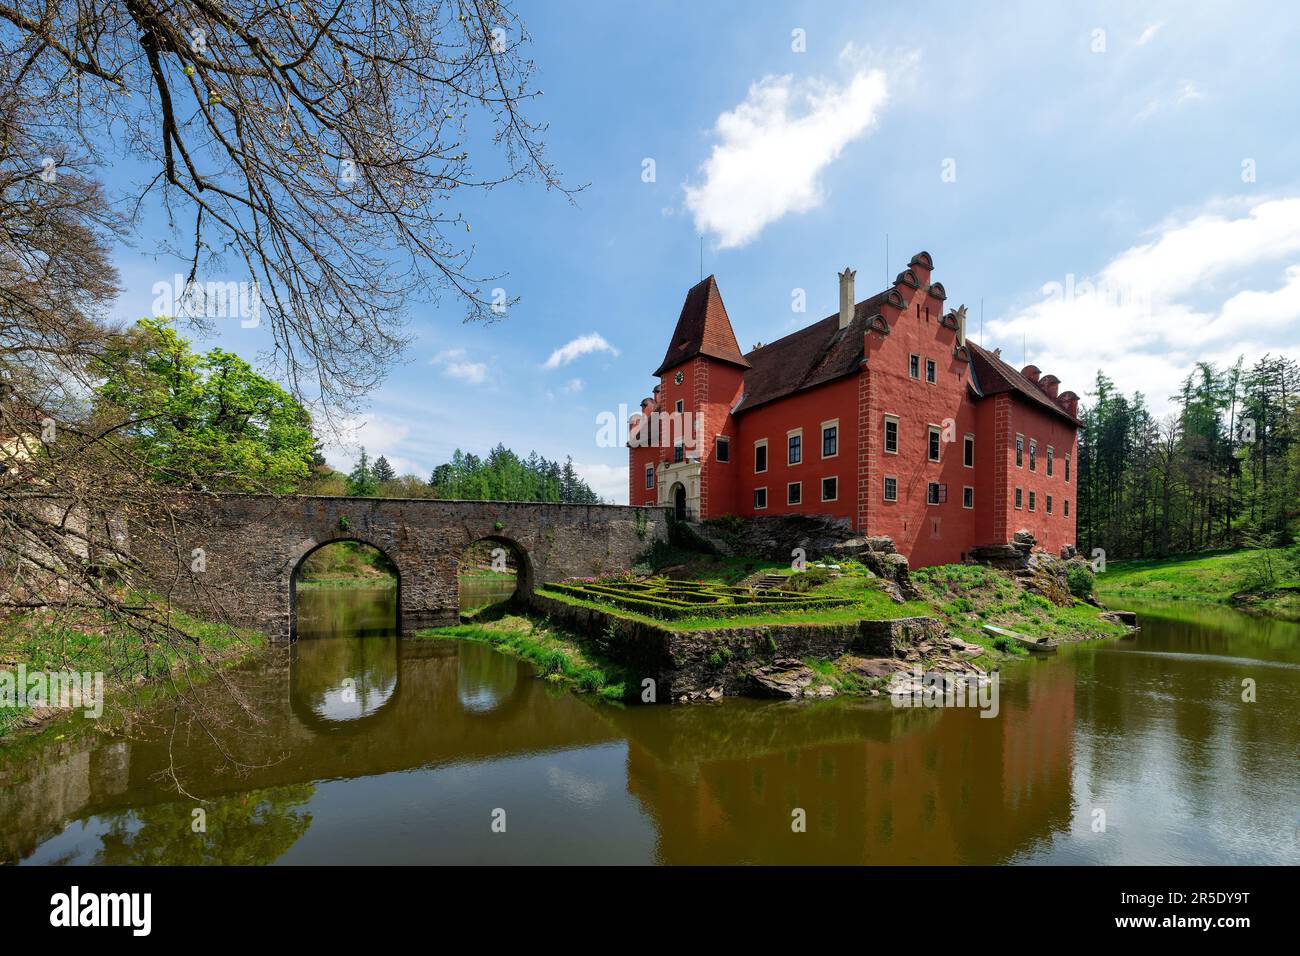 Chateau d'acqua rinascimentale statale con laghetto, parco e alcuni edifici agricoli - Cervena Lhota Chateau nella Boemia meridionale, Repubblica Ceca, Europa Foto Stock